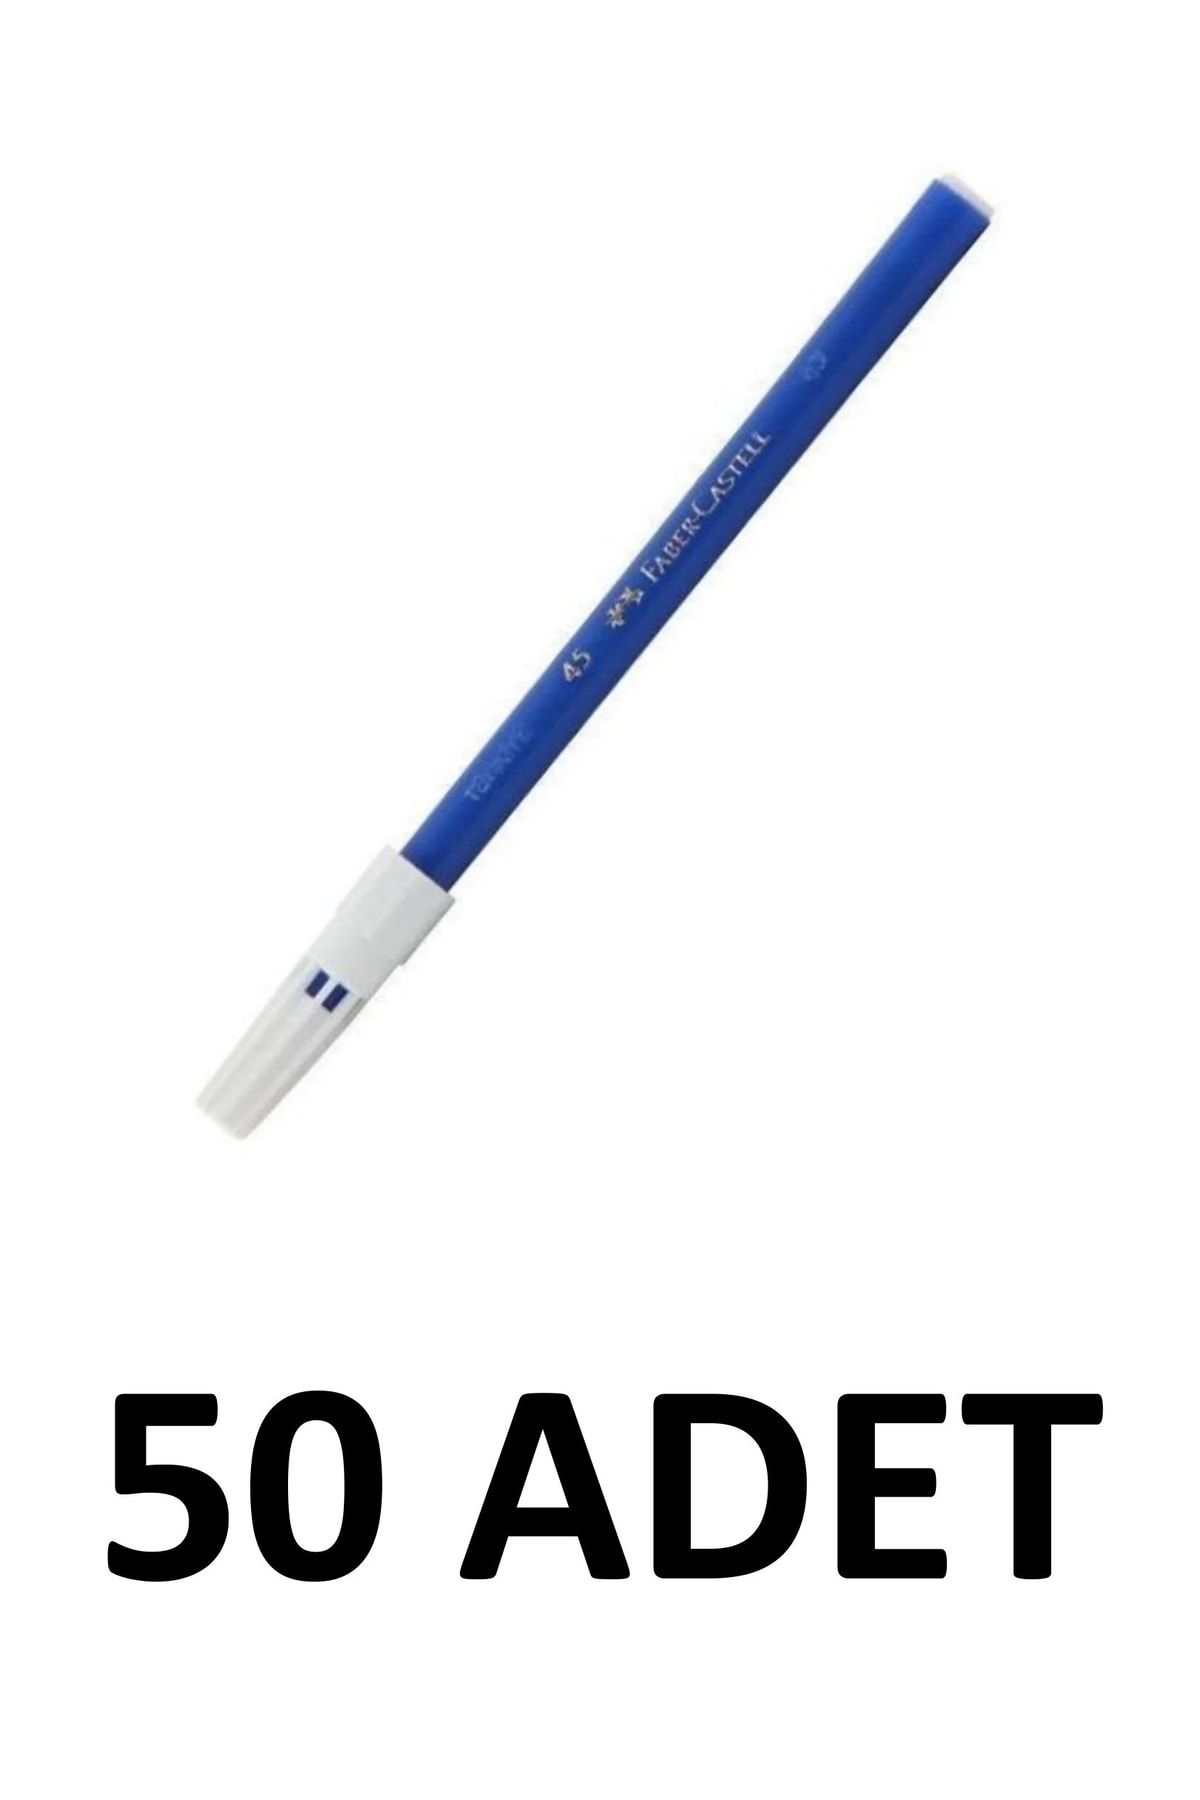 Faber Castell 50 Adet Mavi Keçeli Kalem